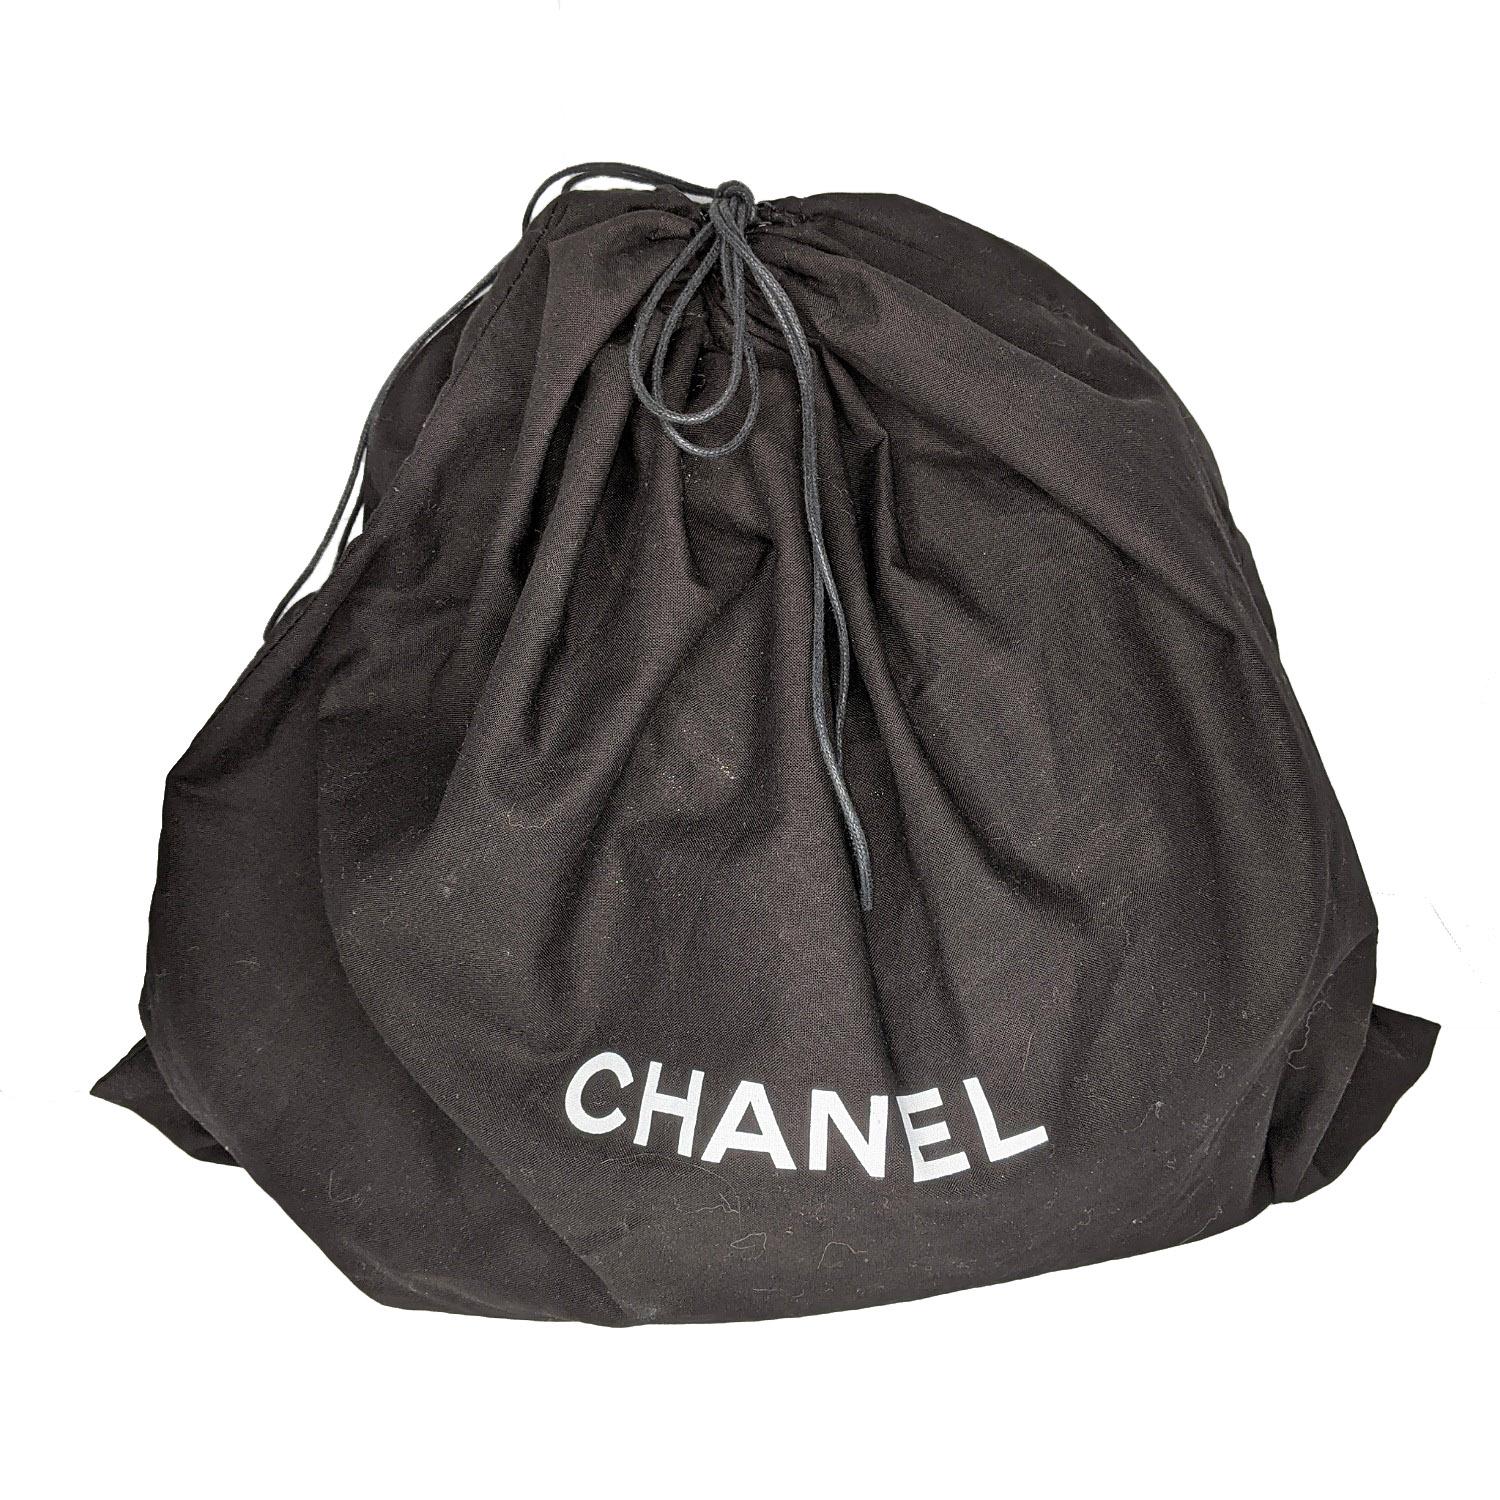 Chanel Metallic Silver Chevron Urban Spirit Large Drawstring Bag 3